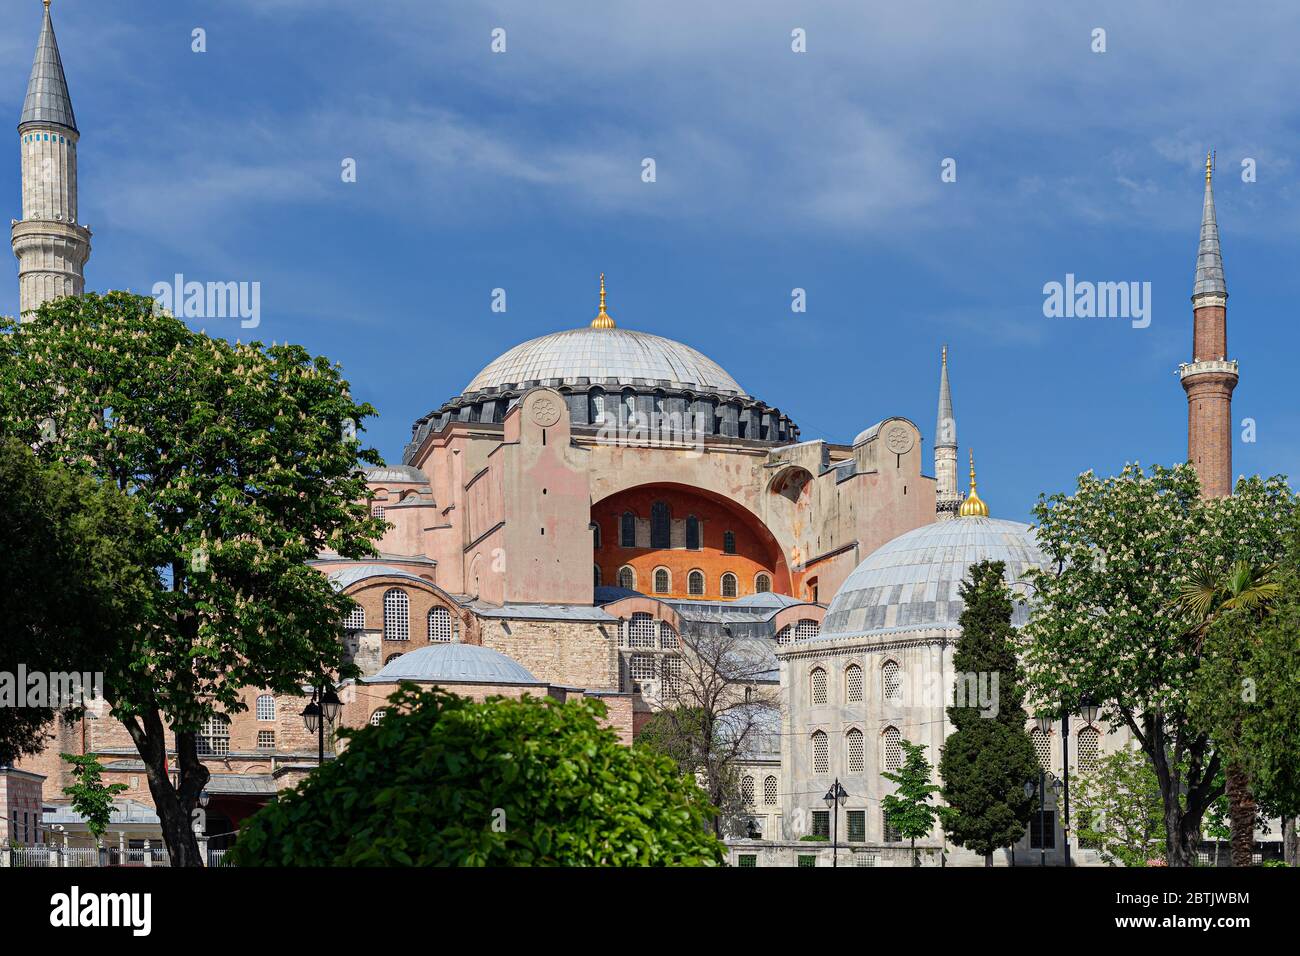 Saint Sophia,Hagia Sophia, Ayasofia historical landmark Istanbul, Turkey. Stock Photo